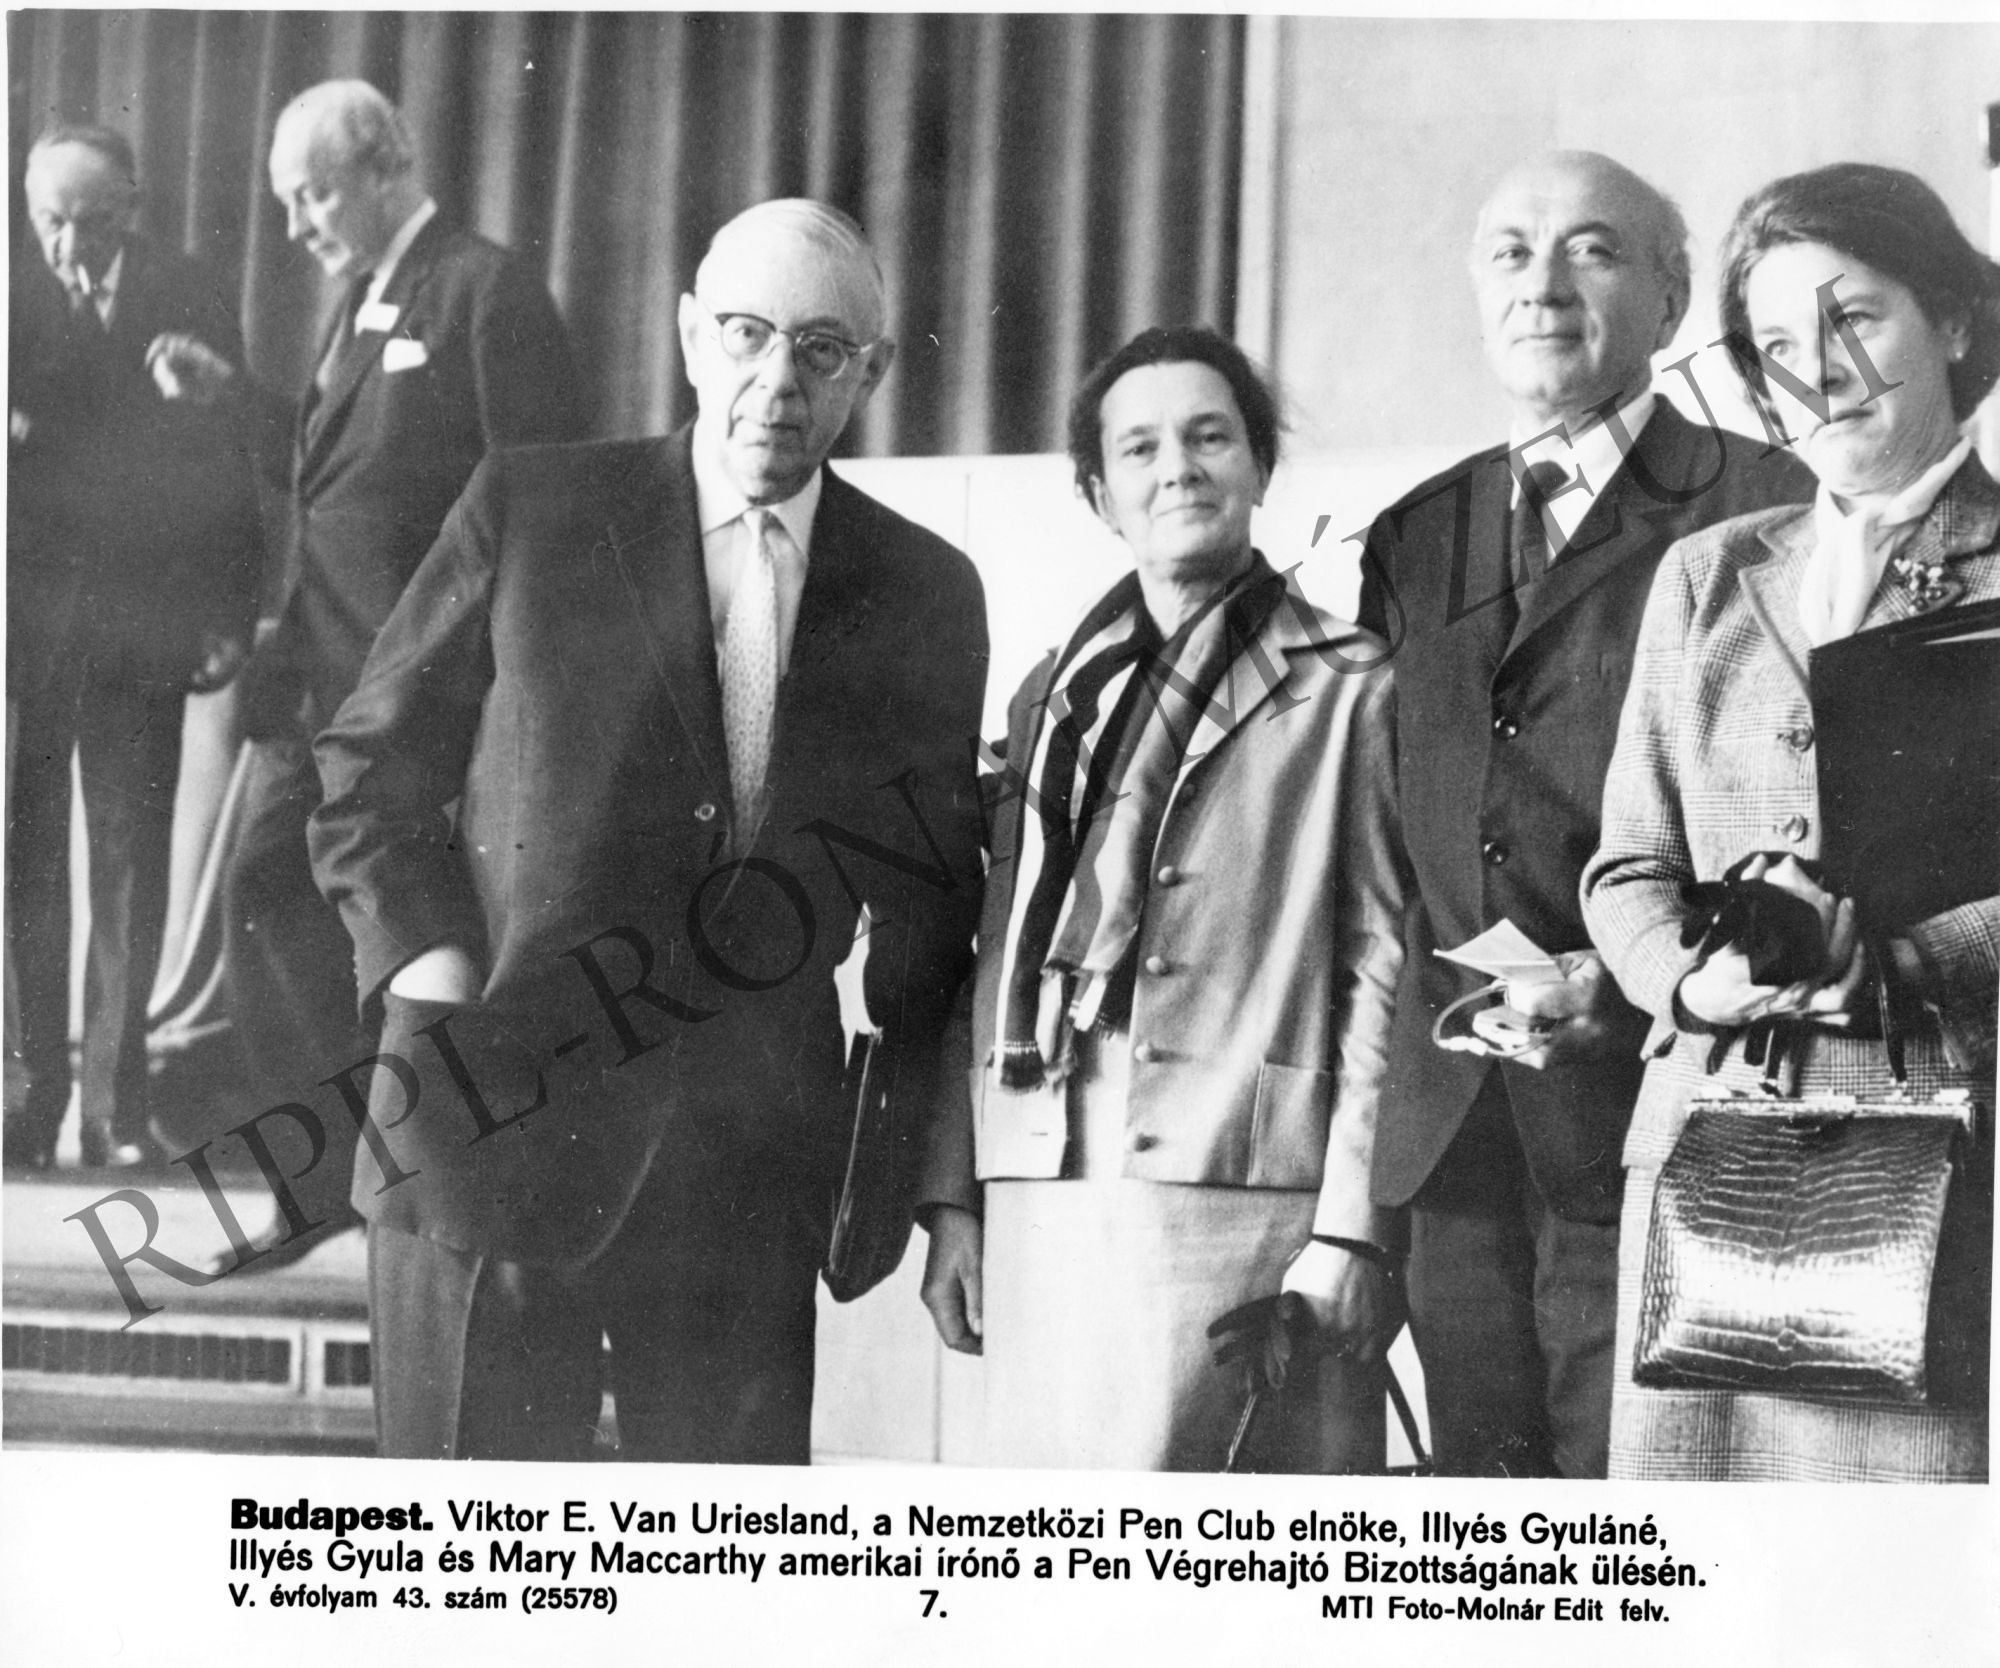 Viktor E. Van Uriesland, a Nemzetközi Pen Club elnöke, Illyés Gyuláné, Illyés Gyula és Mary Maccarthy amerikai írónő a Pen Végrehajtó Bizottságának ülésén (Rippl-Rónai Múzeum CC BY-NC-SA)